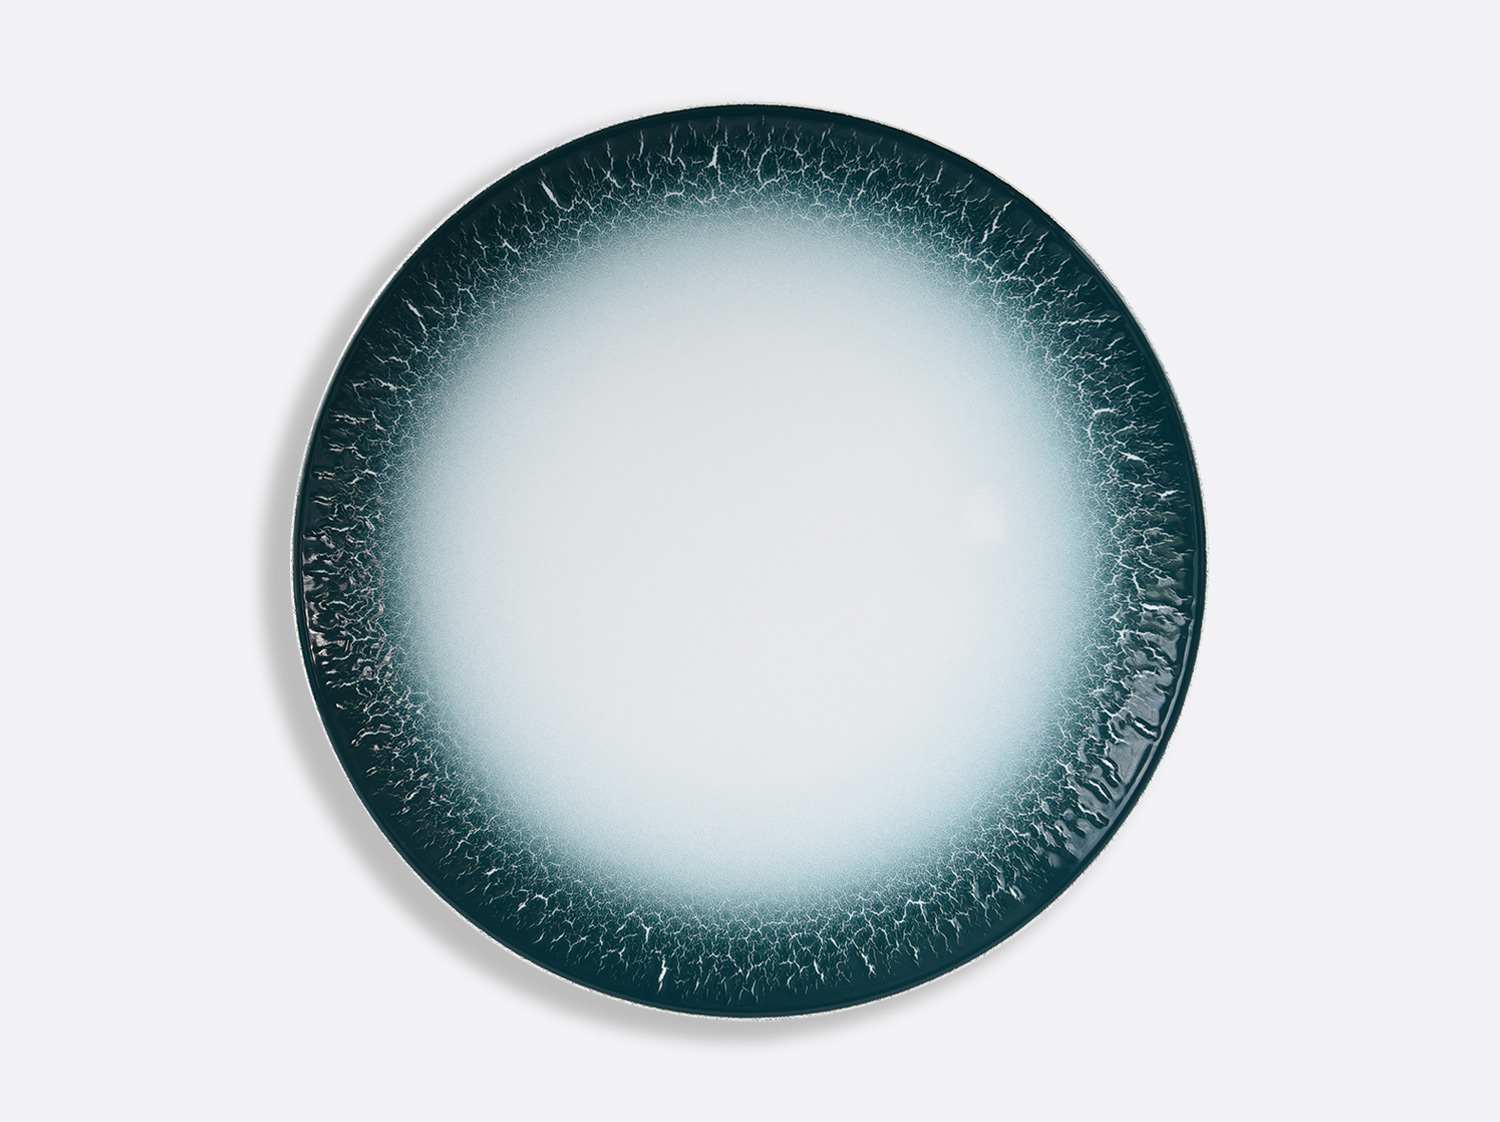 Assiette ultra plate 29,5 cm en porcelaine de la collection TERRA CALANQUE Bernardaud